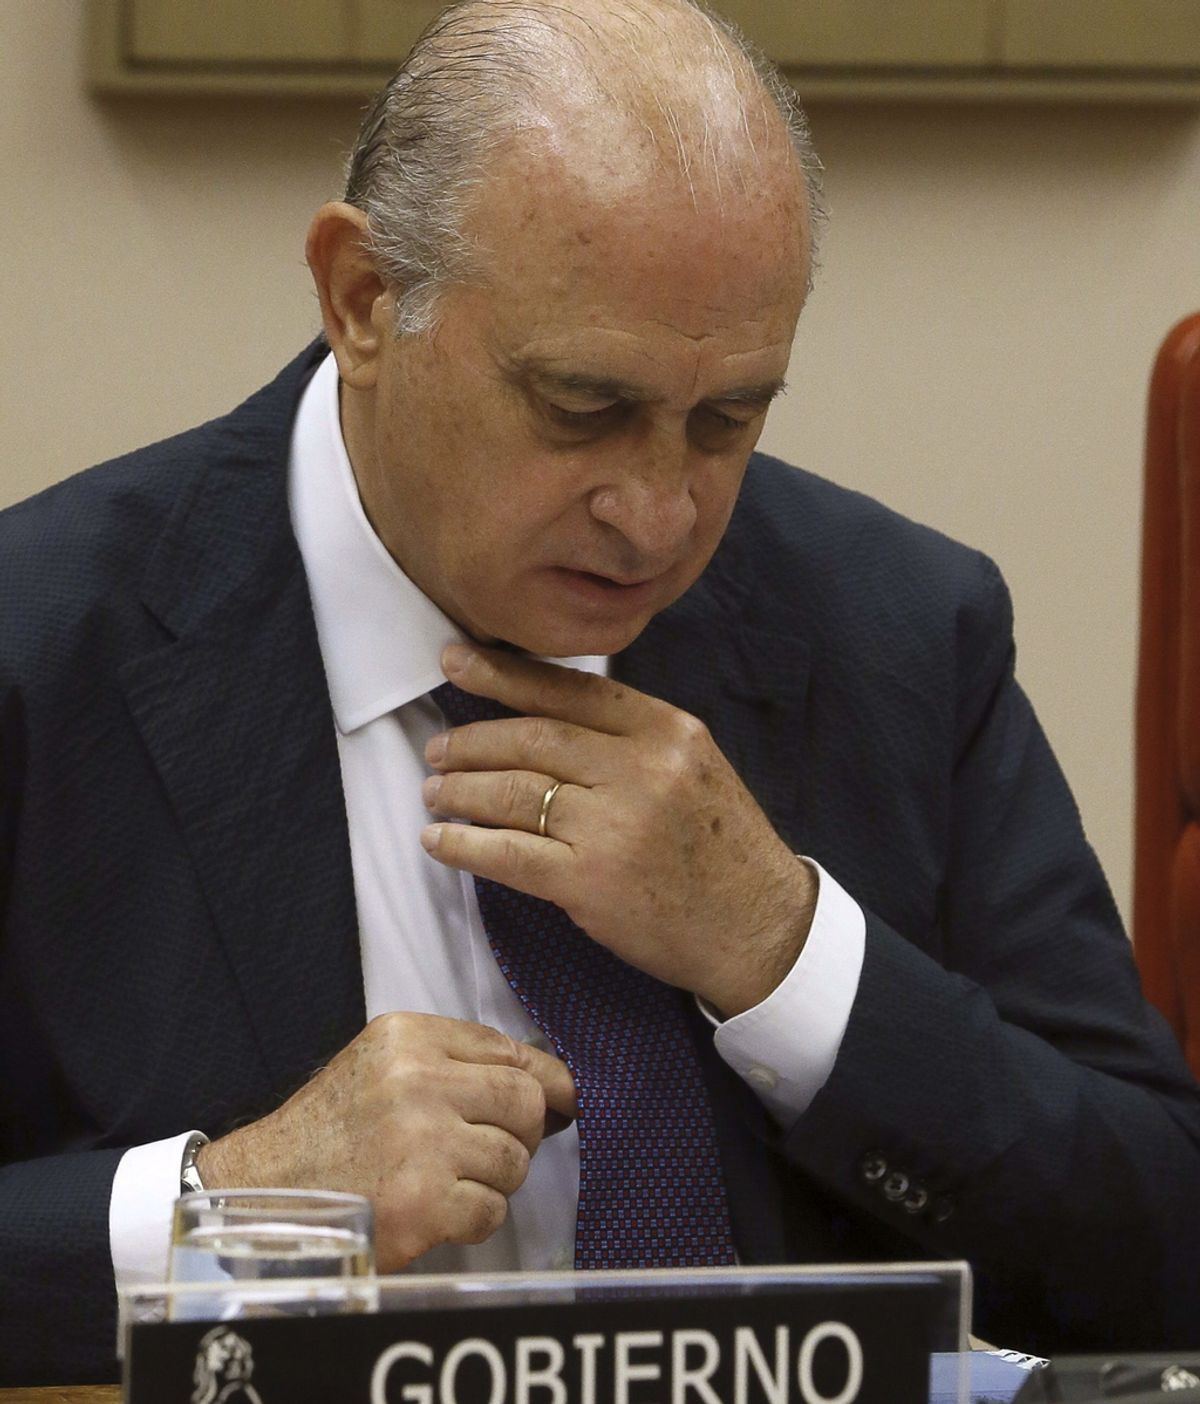 El ministro del Interior, Jorge Fernández Díaz, comparece para explicar la reunión con Rodrigo Rato